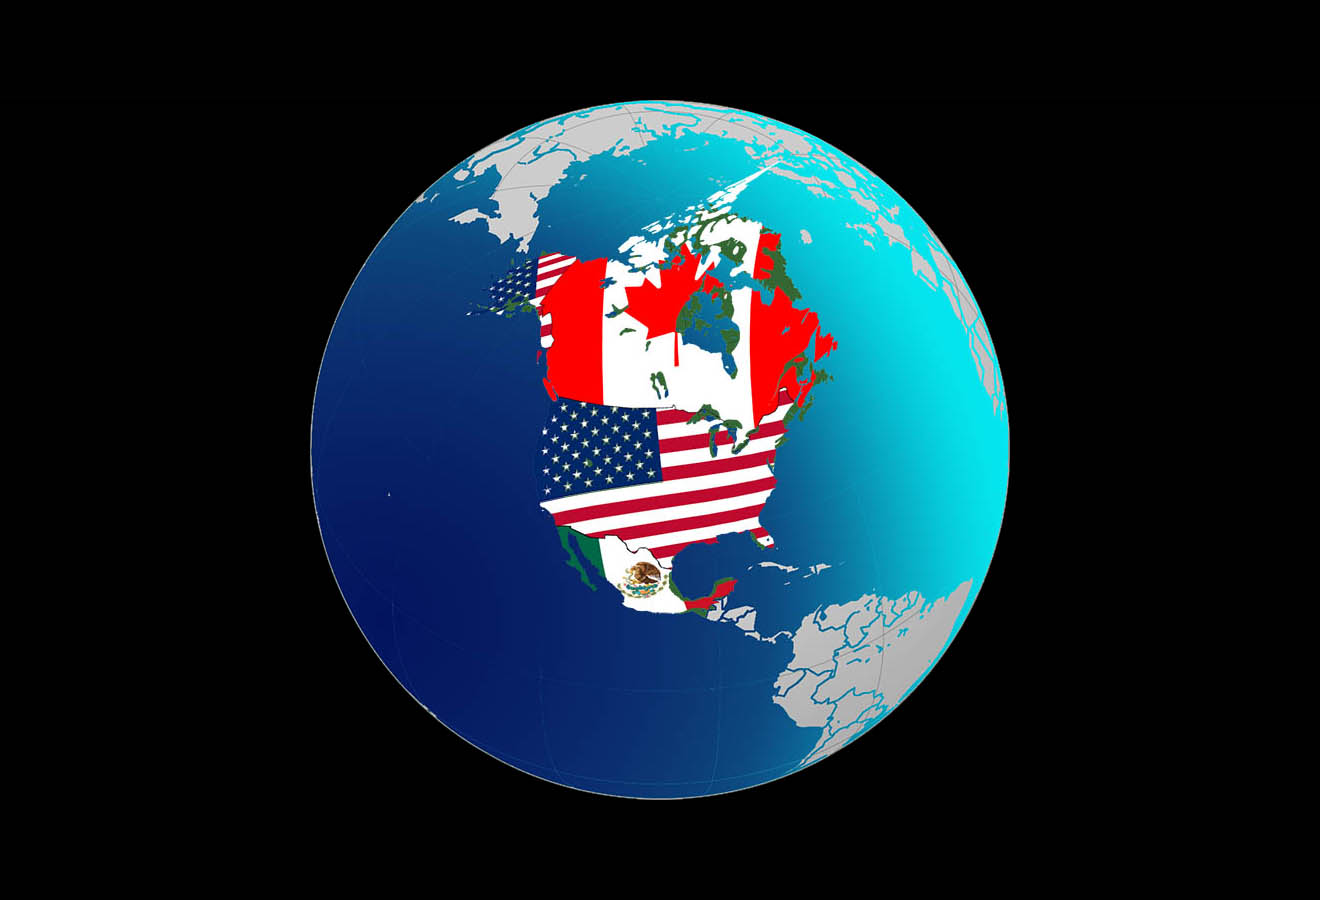 Retransmisión: ¿Tiene futuro el Tratado de Libre Comercio de América del Norte?